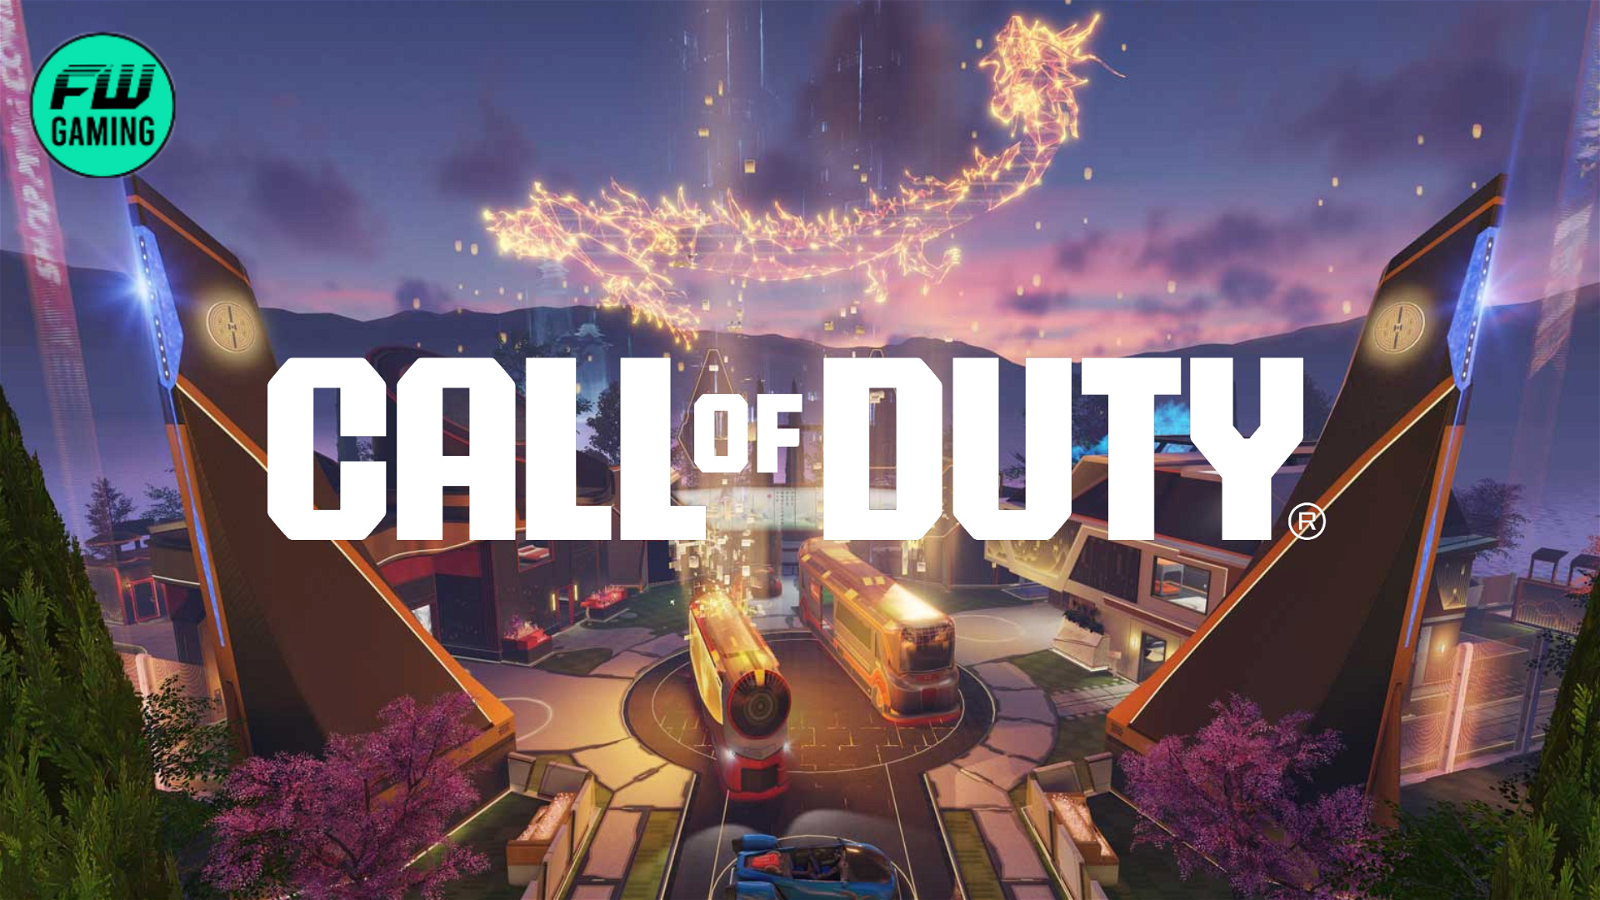 Call of Duty от Activision выходит далеко за пределы открытого мира в предстоящей войне в Персидском заливе Black Ops